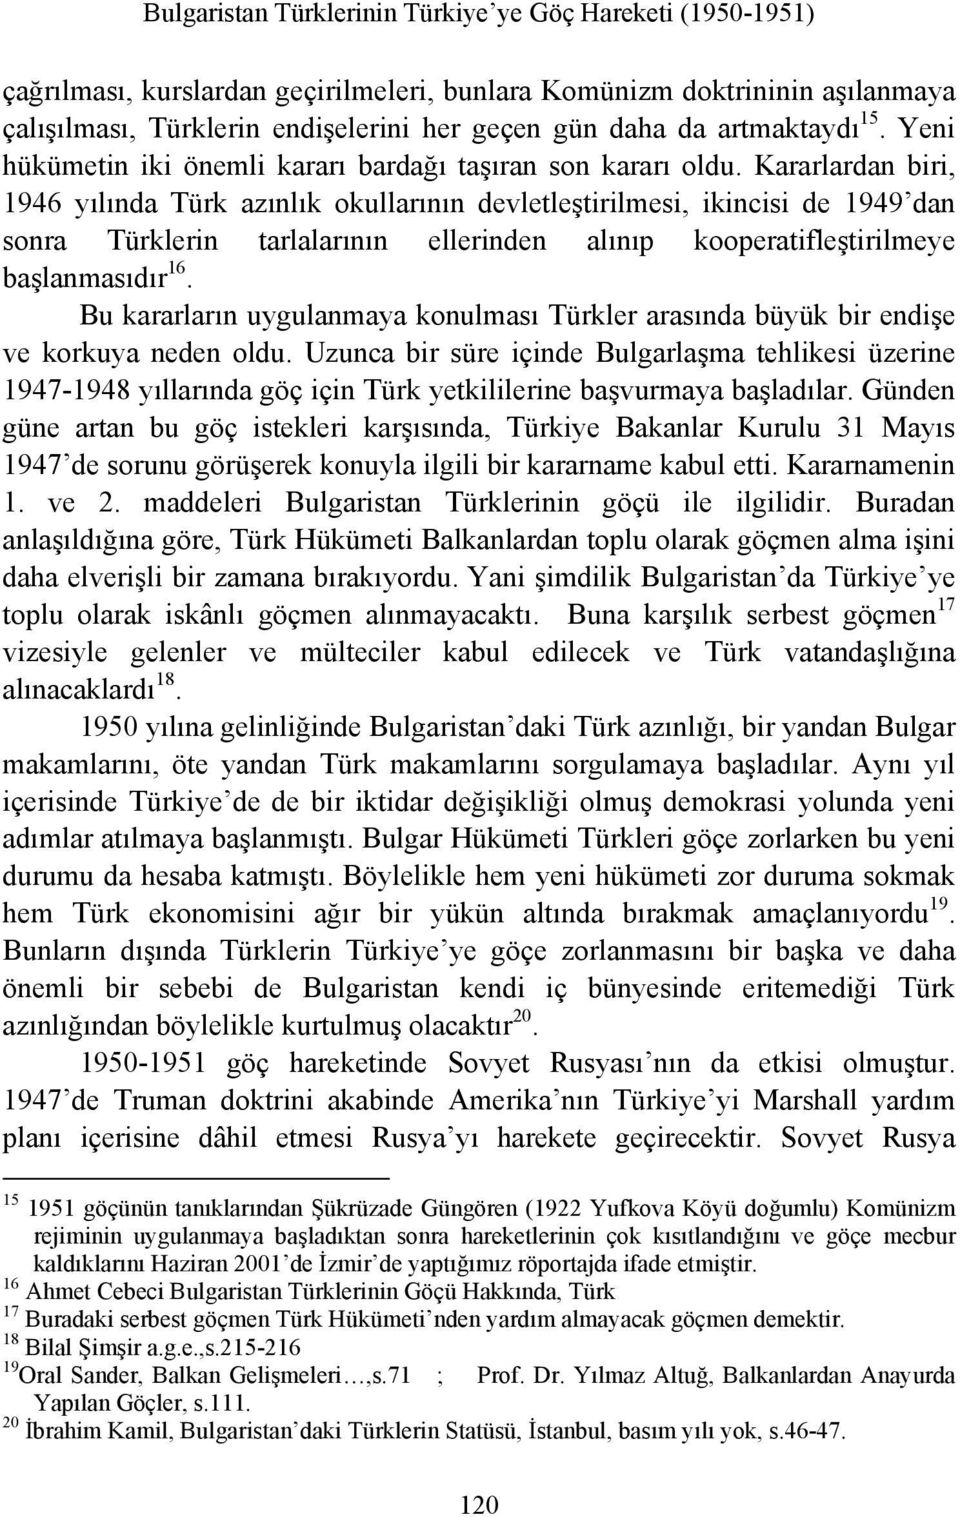 Kararlardan biri, 1946 yılında Türk azınlık okullarının devletleştirilmesi, ikincisi de 1949 dan sonra Türklerin tarlalarının ellerinden alınıp kooperatifleştirilmeye başlanmasıdır 16.